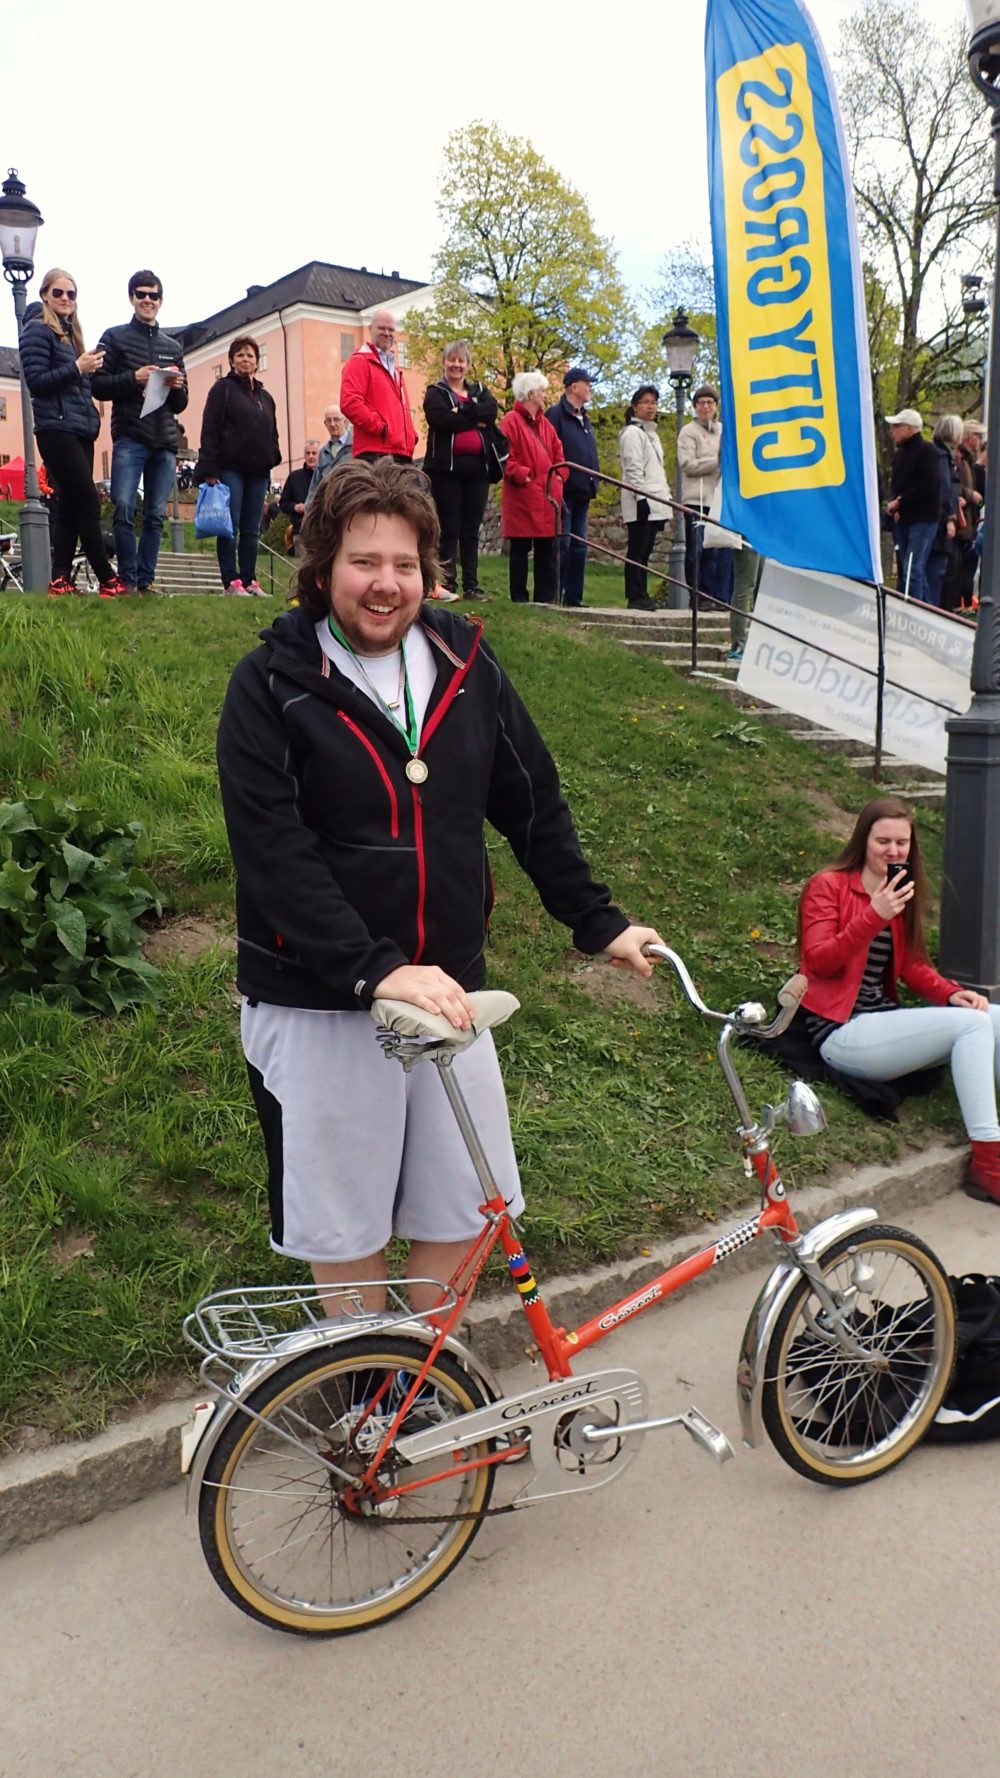 Vissa skilde ut sig i mängden av racercyklar, bland annat den här killen med minicykel som trampade 30 km, liksom en kille som cyklade på enhjuling! 